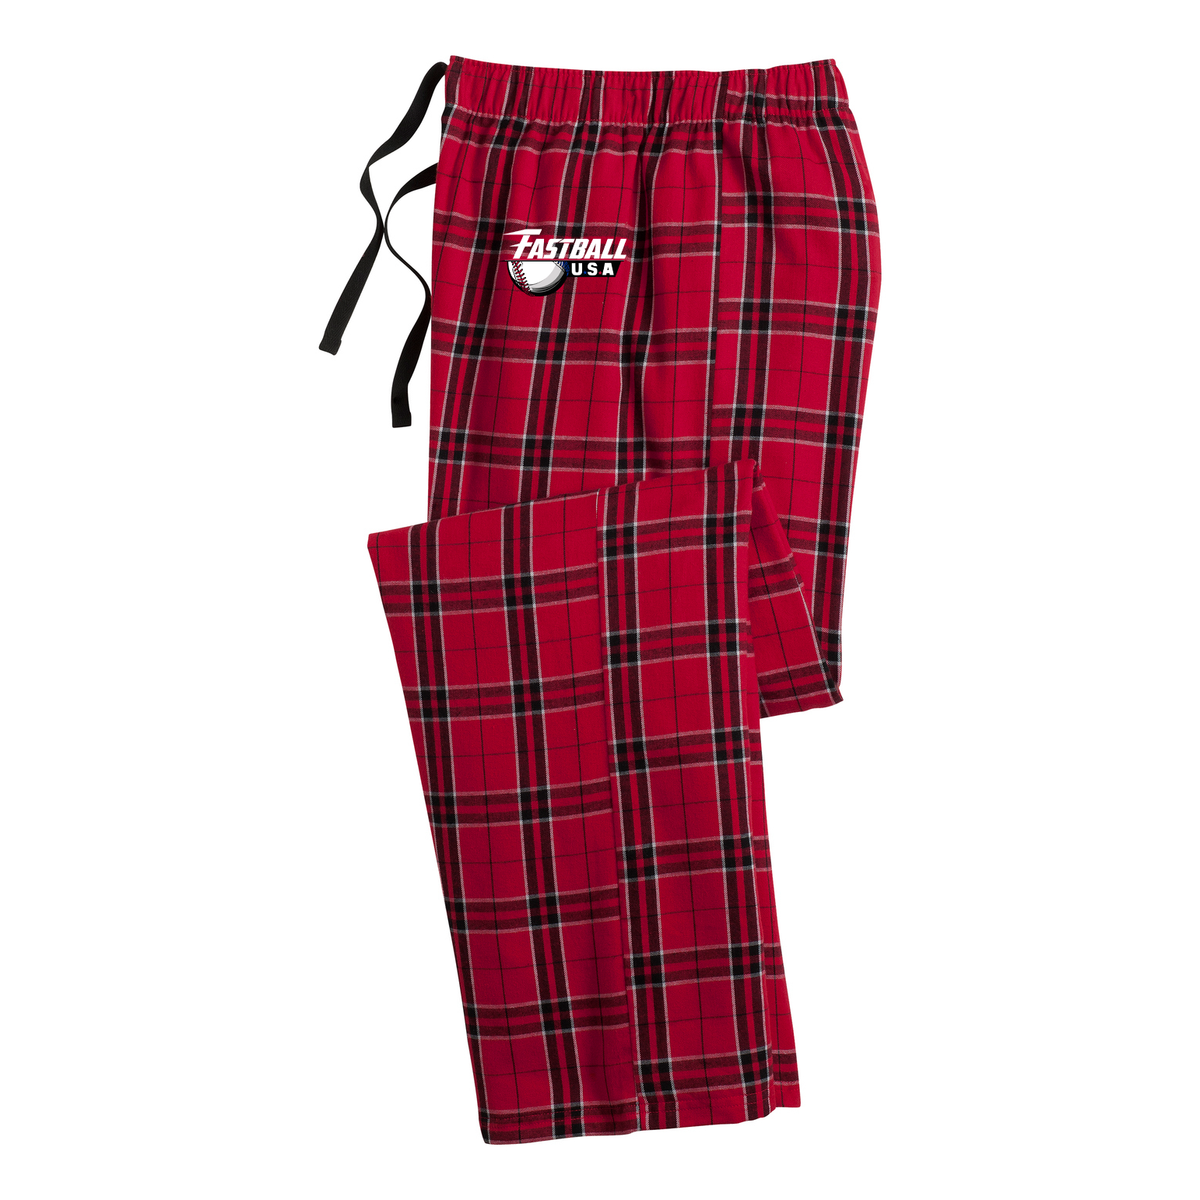 Fastball USA Academy Plaid Pajama Pants